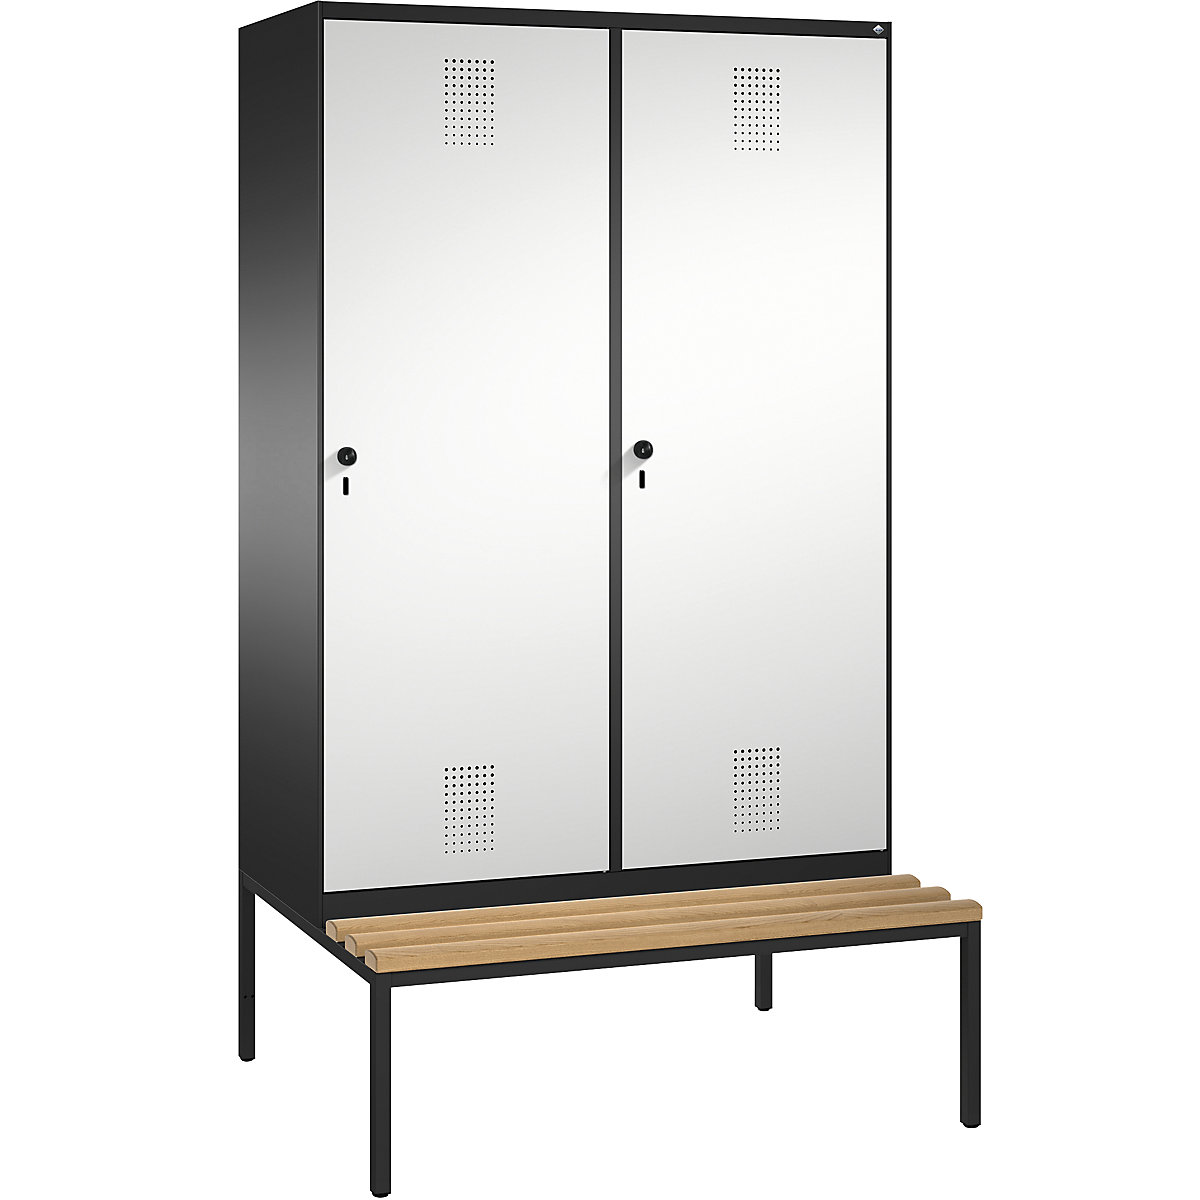 Šatní skříň s lavicí EVOLO s dveřmi přes 2 oddíly – C+P, 4 oddíly, 2 dveře, šířka oddílu 300 mm, černošedá / světlá šedá-14